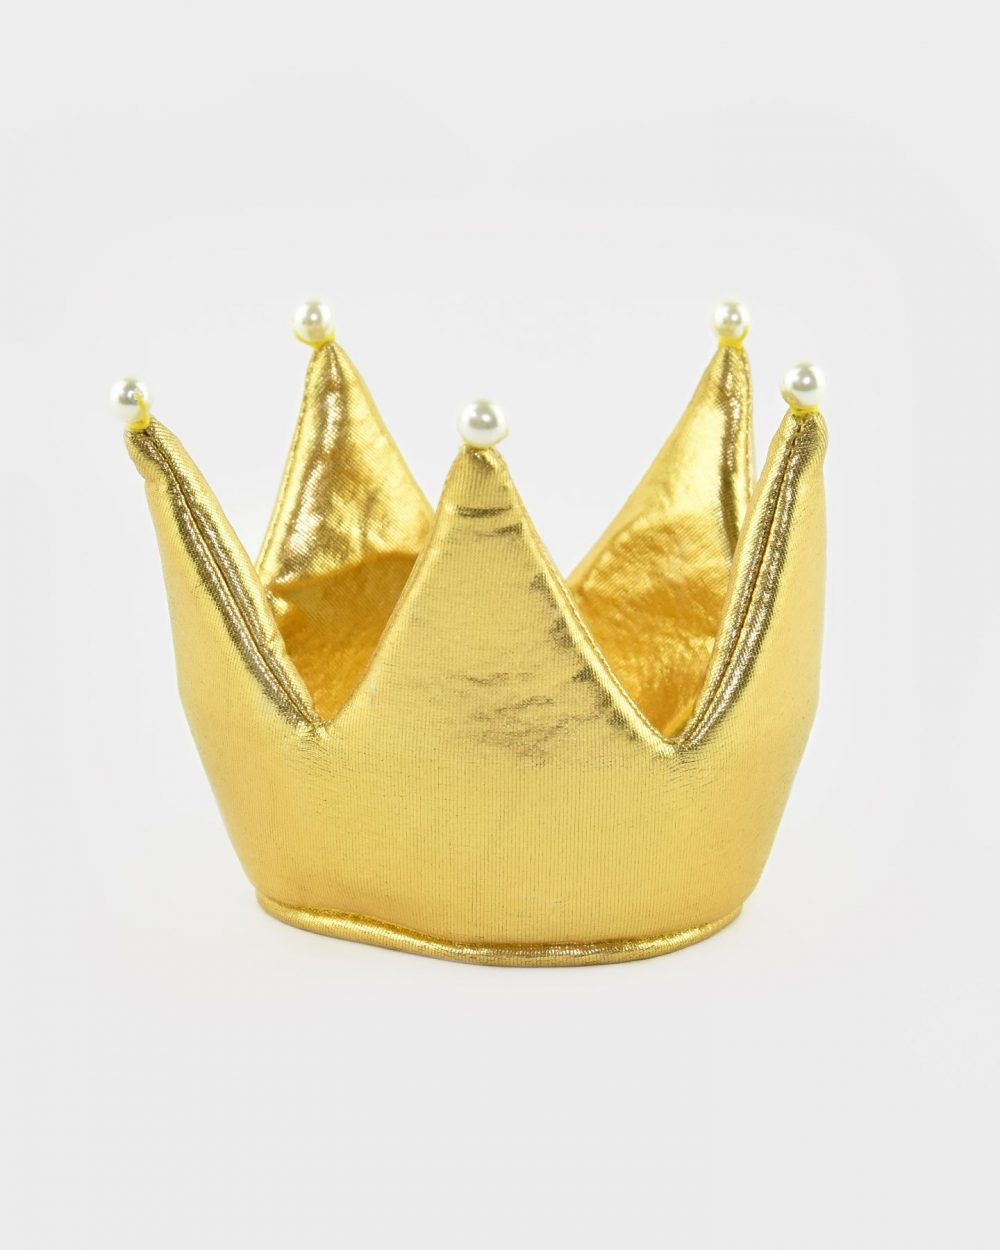 Vadderad guldig krona med pärldetaljer.